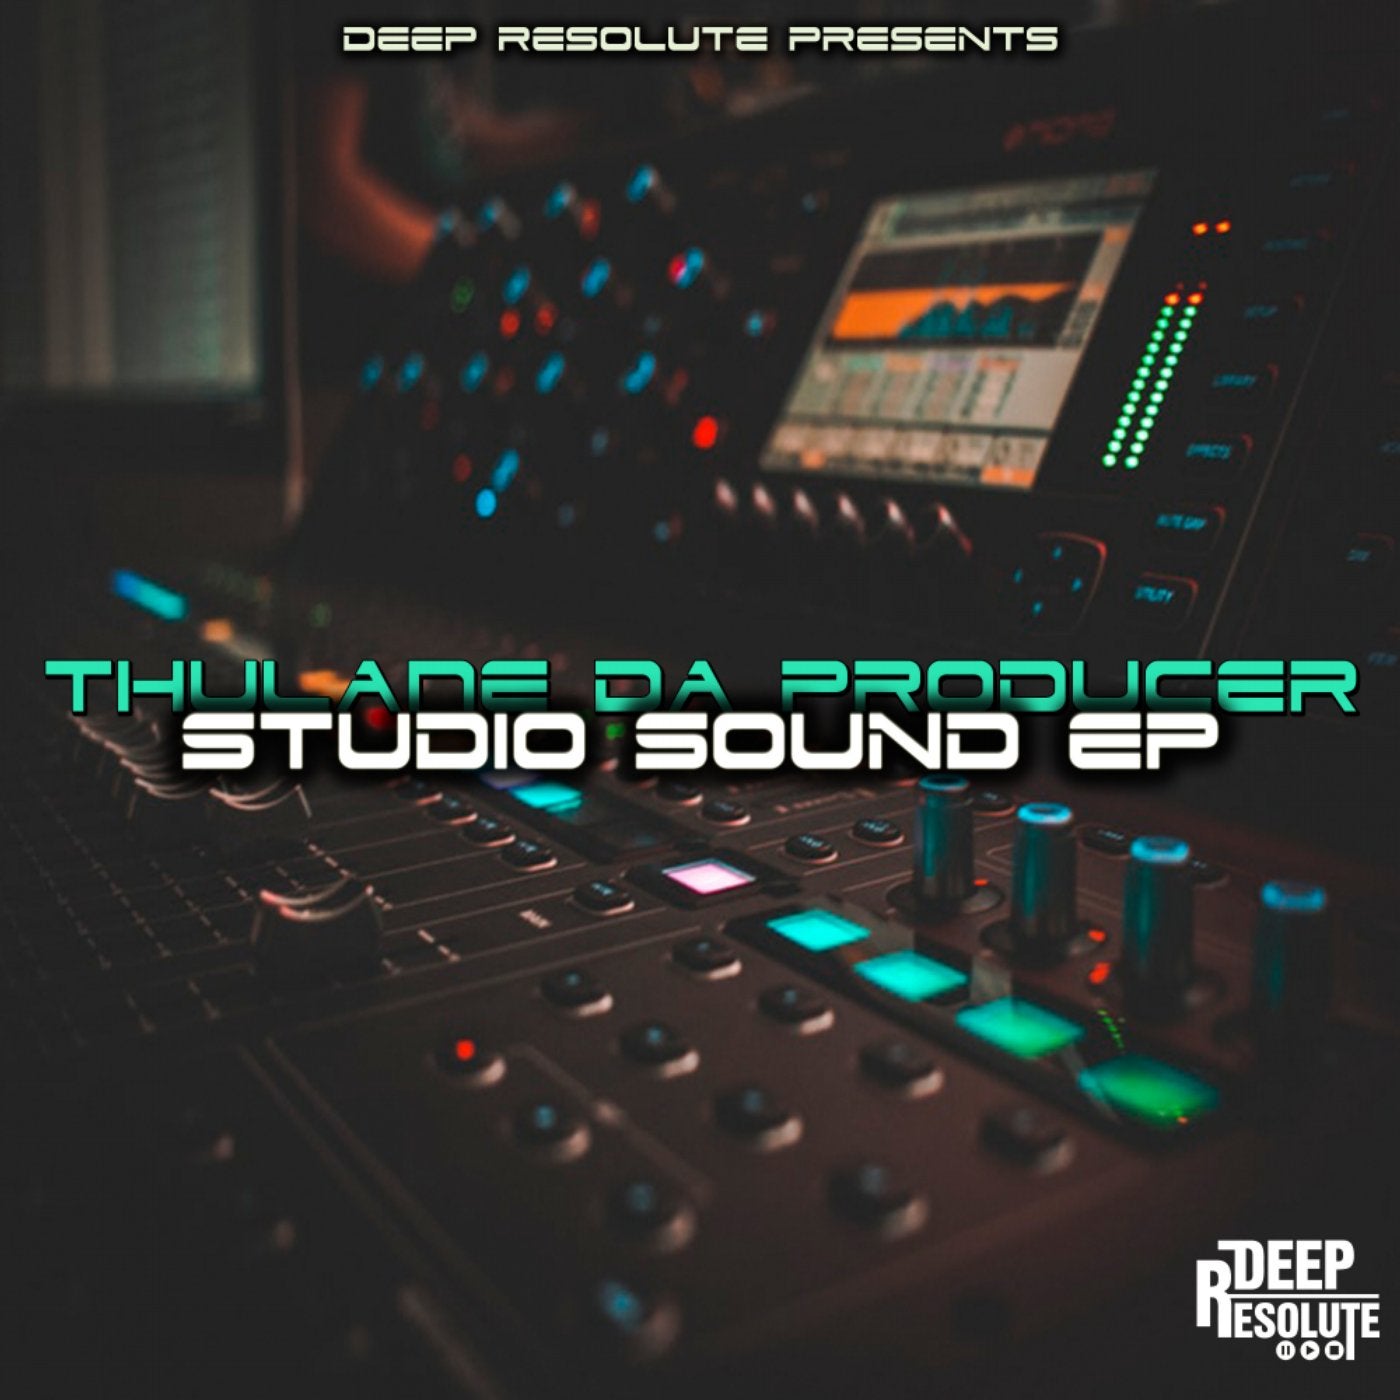 Studio Sound EP